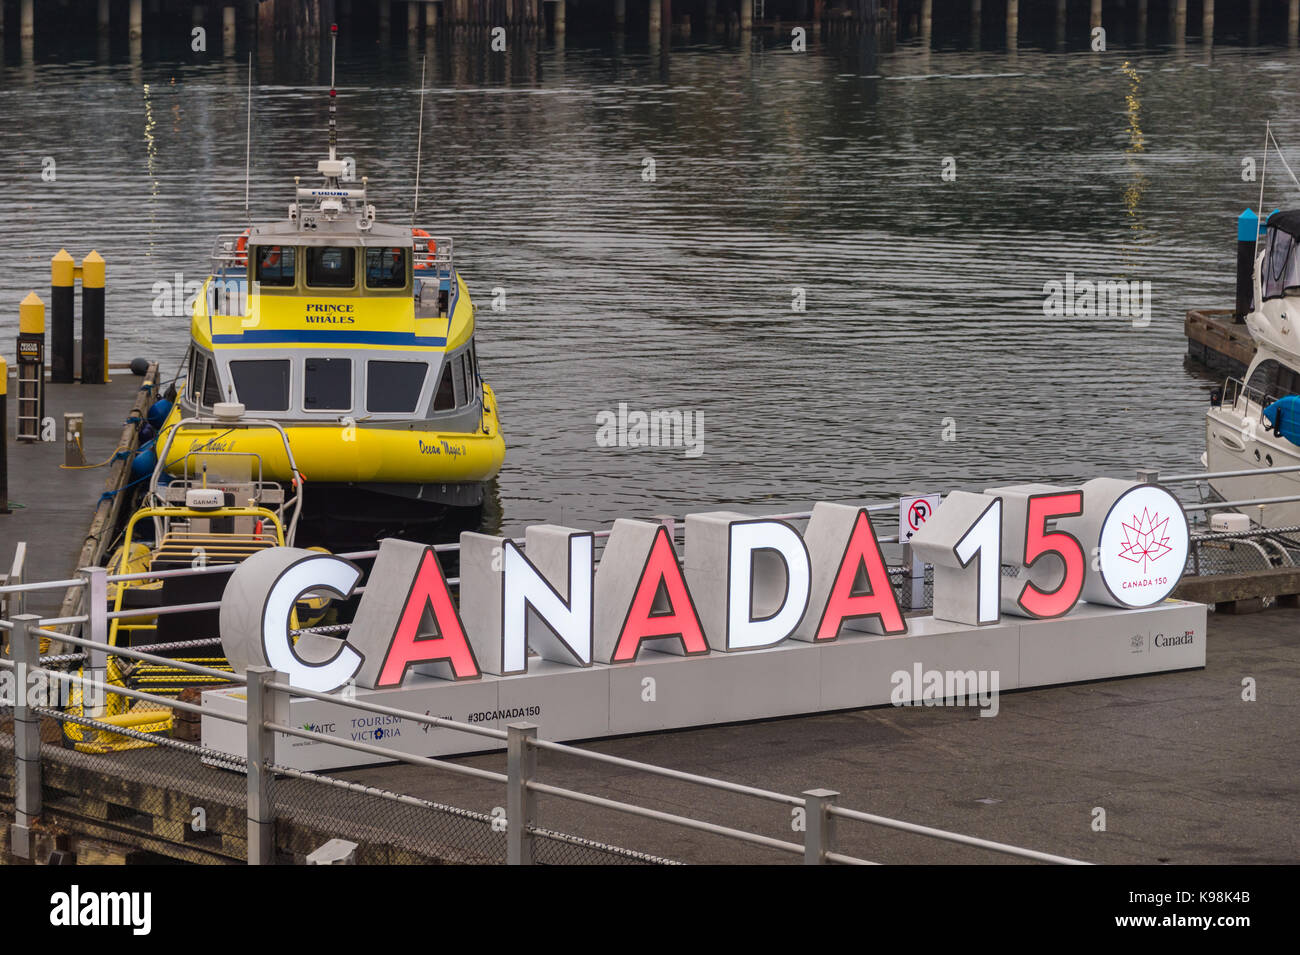 Victoria, Colombie-Britannique, Canada - 7 septembre 2017 : giant canada 150 inscription célébrant le 150e anniversaire du Canada Banque D'Images